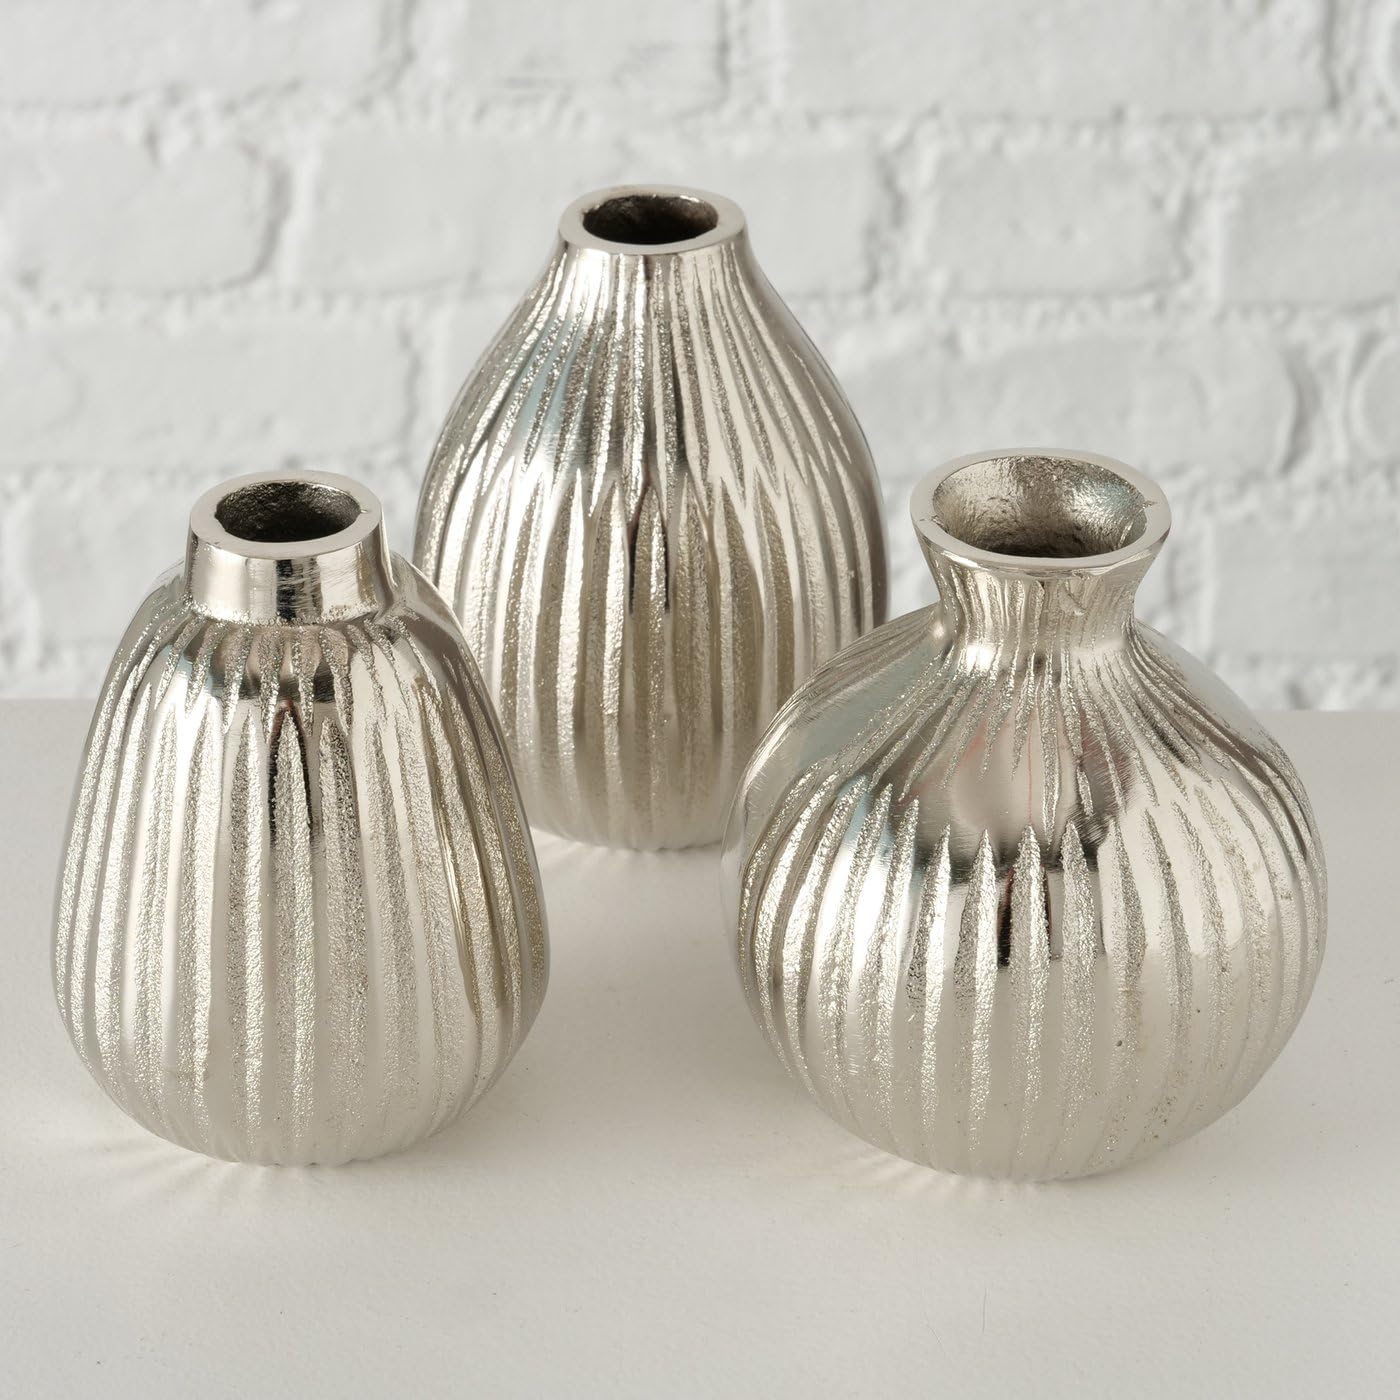 mucplants 3er Set Vasen Silber aus Aluminium 12cm Moderne Dekovasen Blumenvasen Tischvasen für Trockenblumen